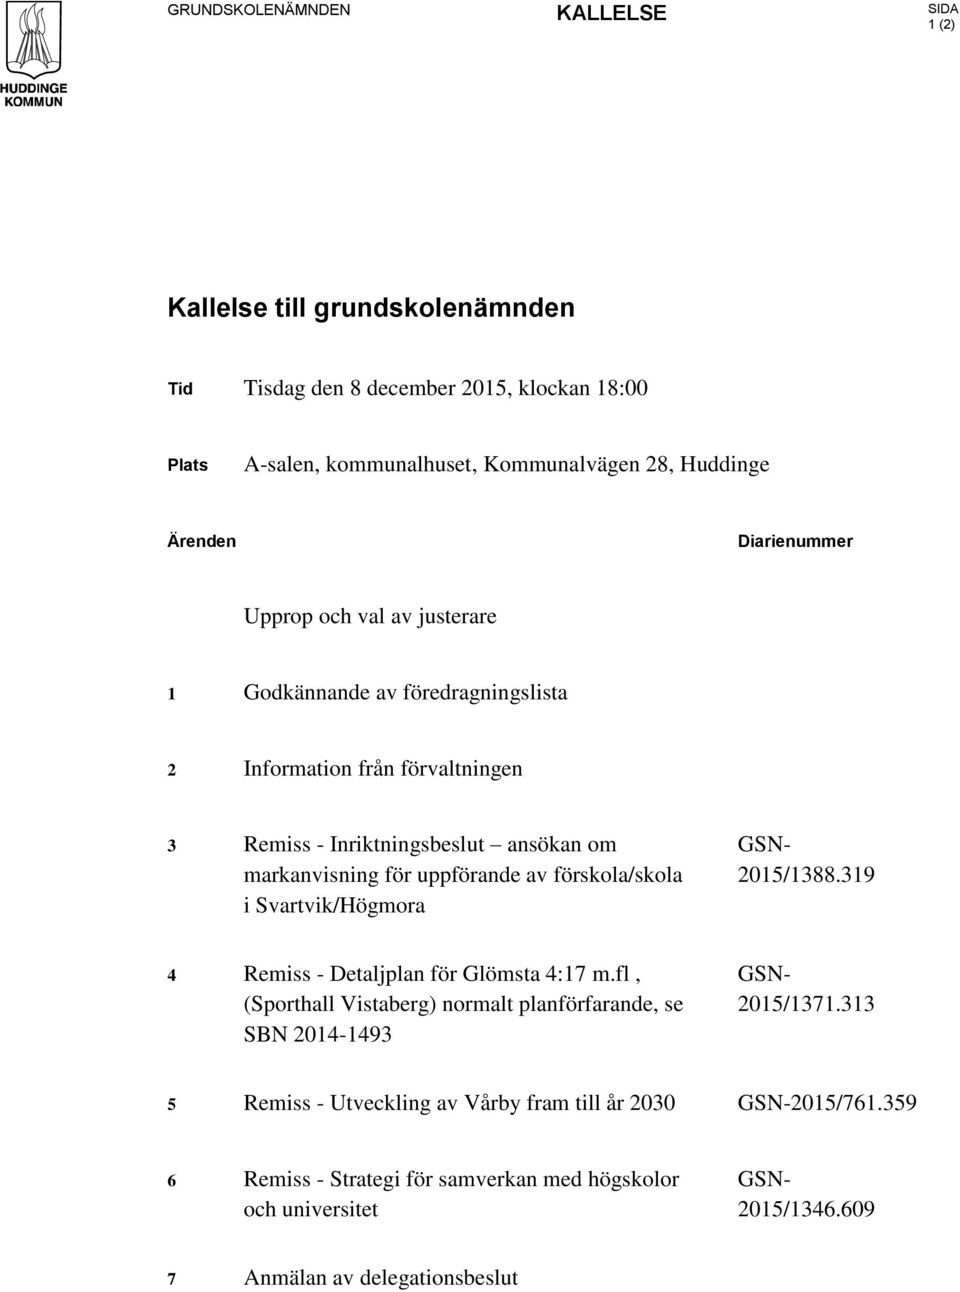 av förskola/skola i Svartvik/Högmora GSN- 2015/1388.319 4 Remiss - Detaljplan för Glömsta 4:17 m.fl, (Sporthall Vistaberg) normalt planförfarande, se SBN 2014-1493 GSN- 2015/1371.